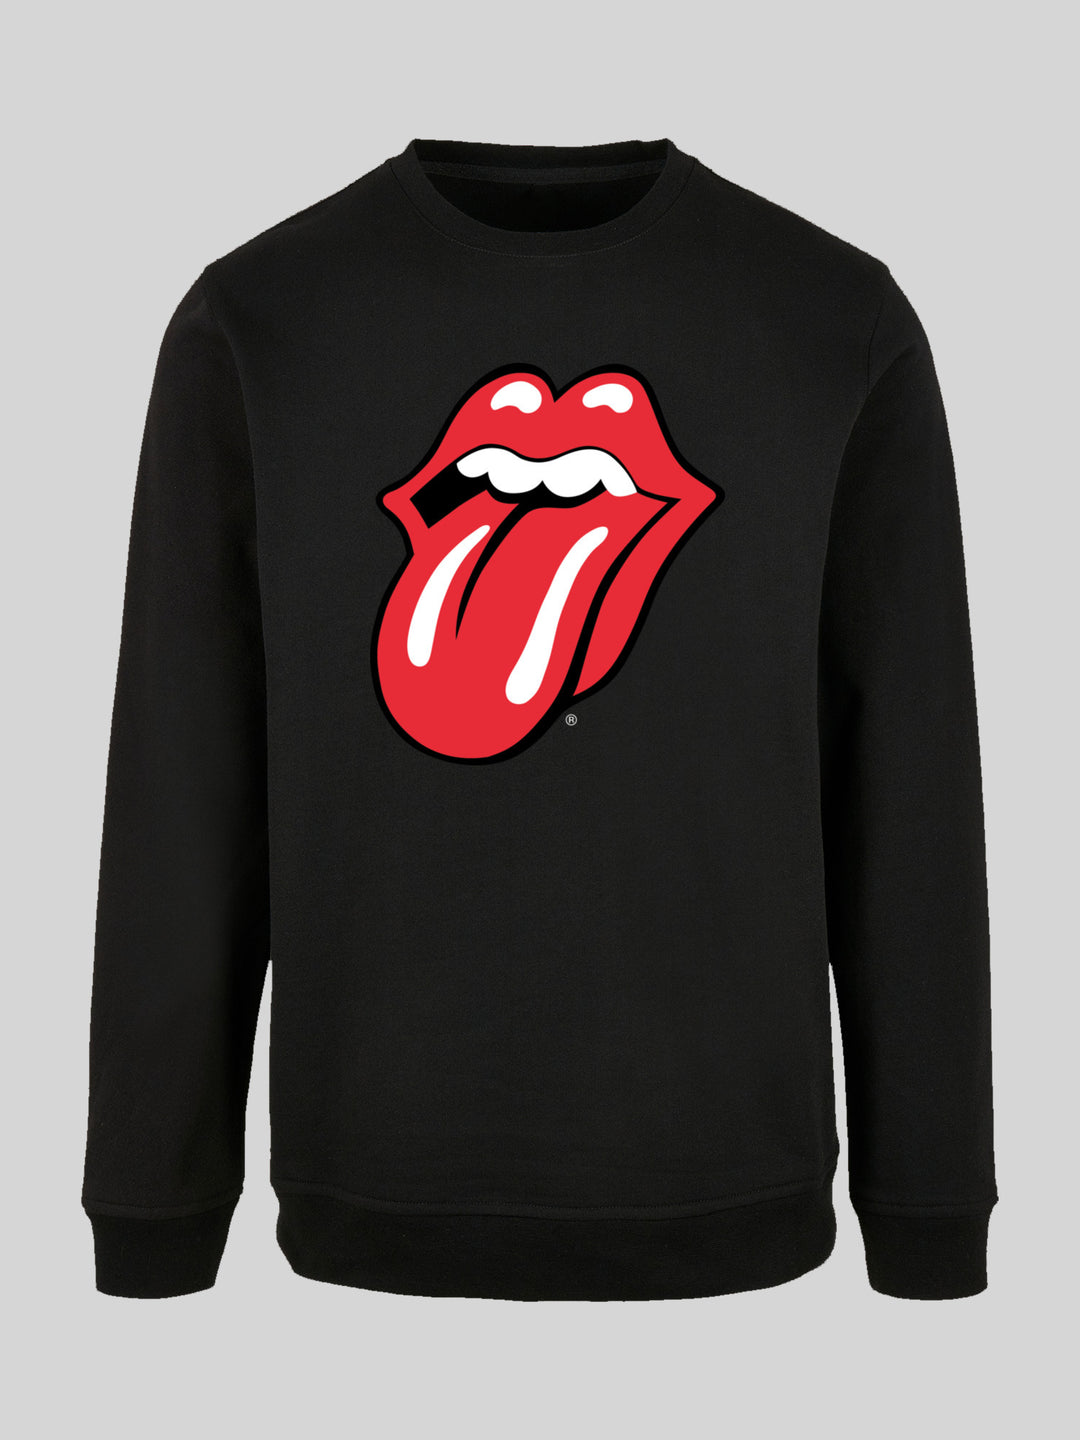 | F4NT4STIC Classic Sweate Rolling Stones Tongue – The Longsleeve | Sweatshirt Men